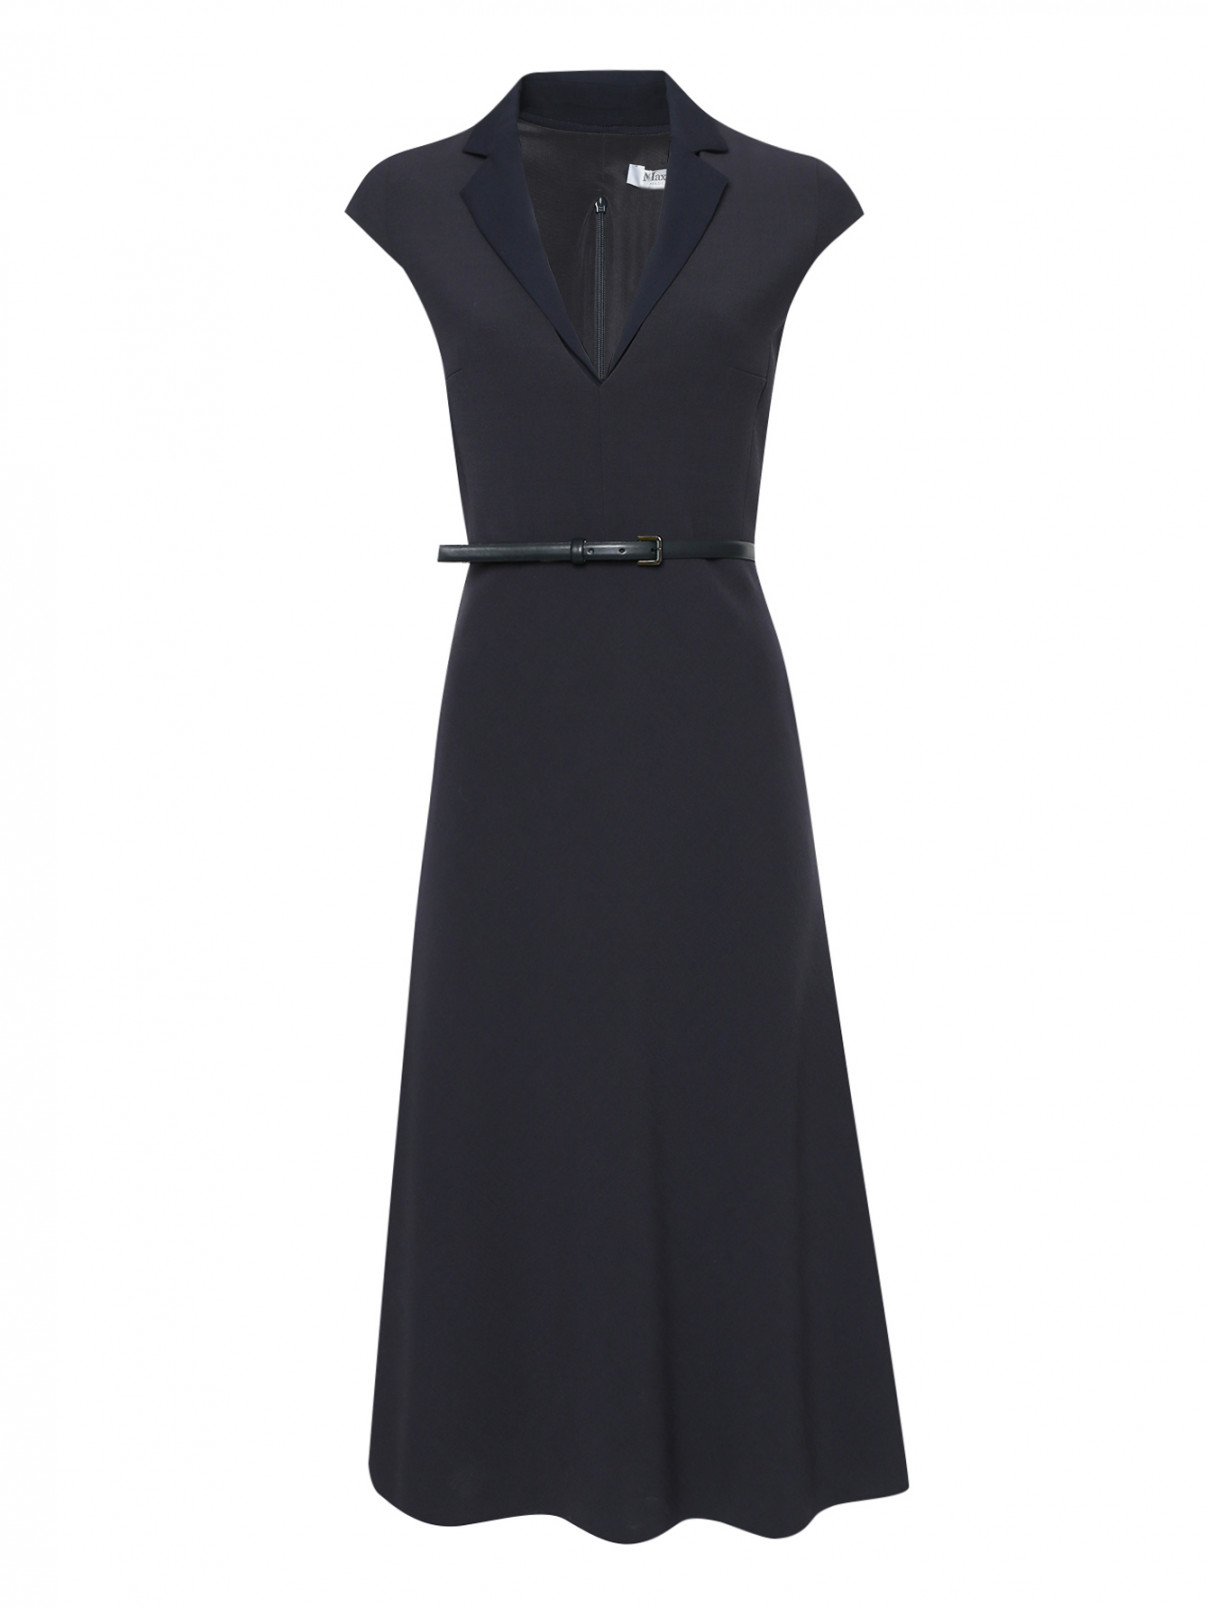 Платье из шерсти со сложным воротником Max Mara  –  Общий вид  – Цвет:  Синий